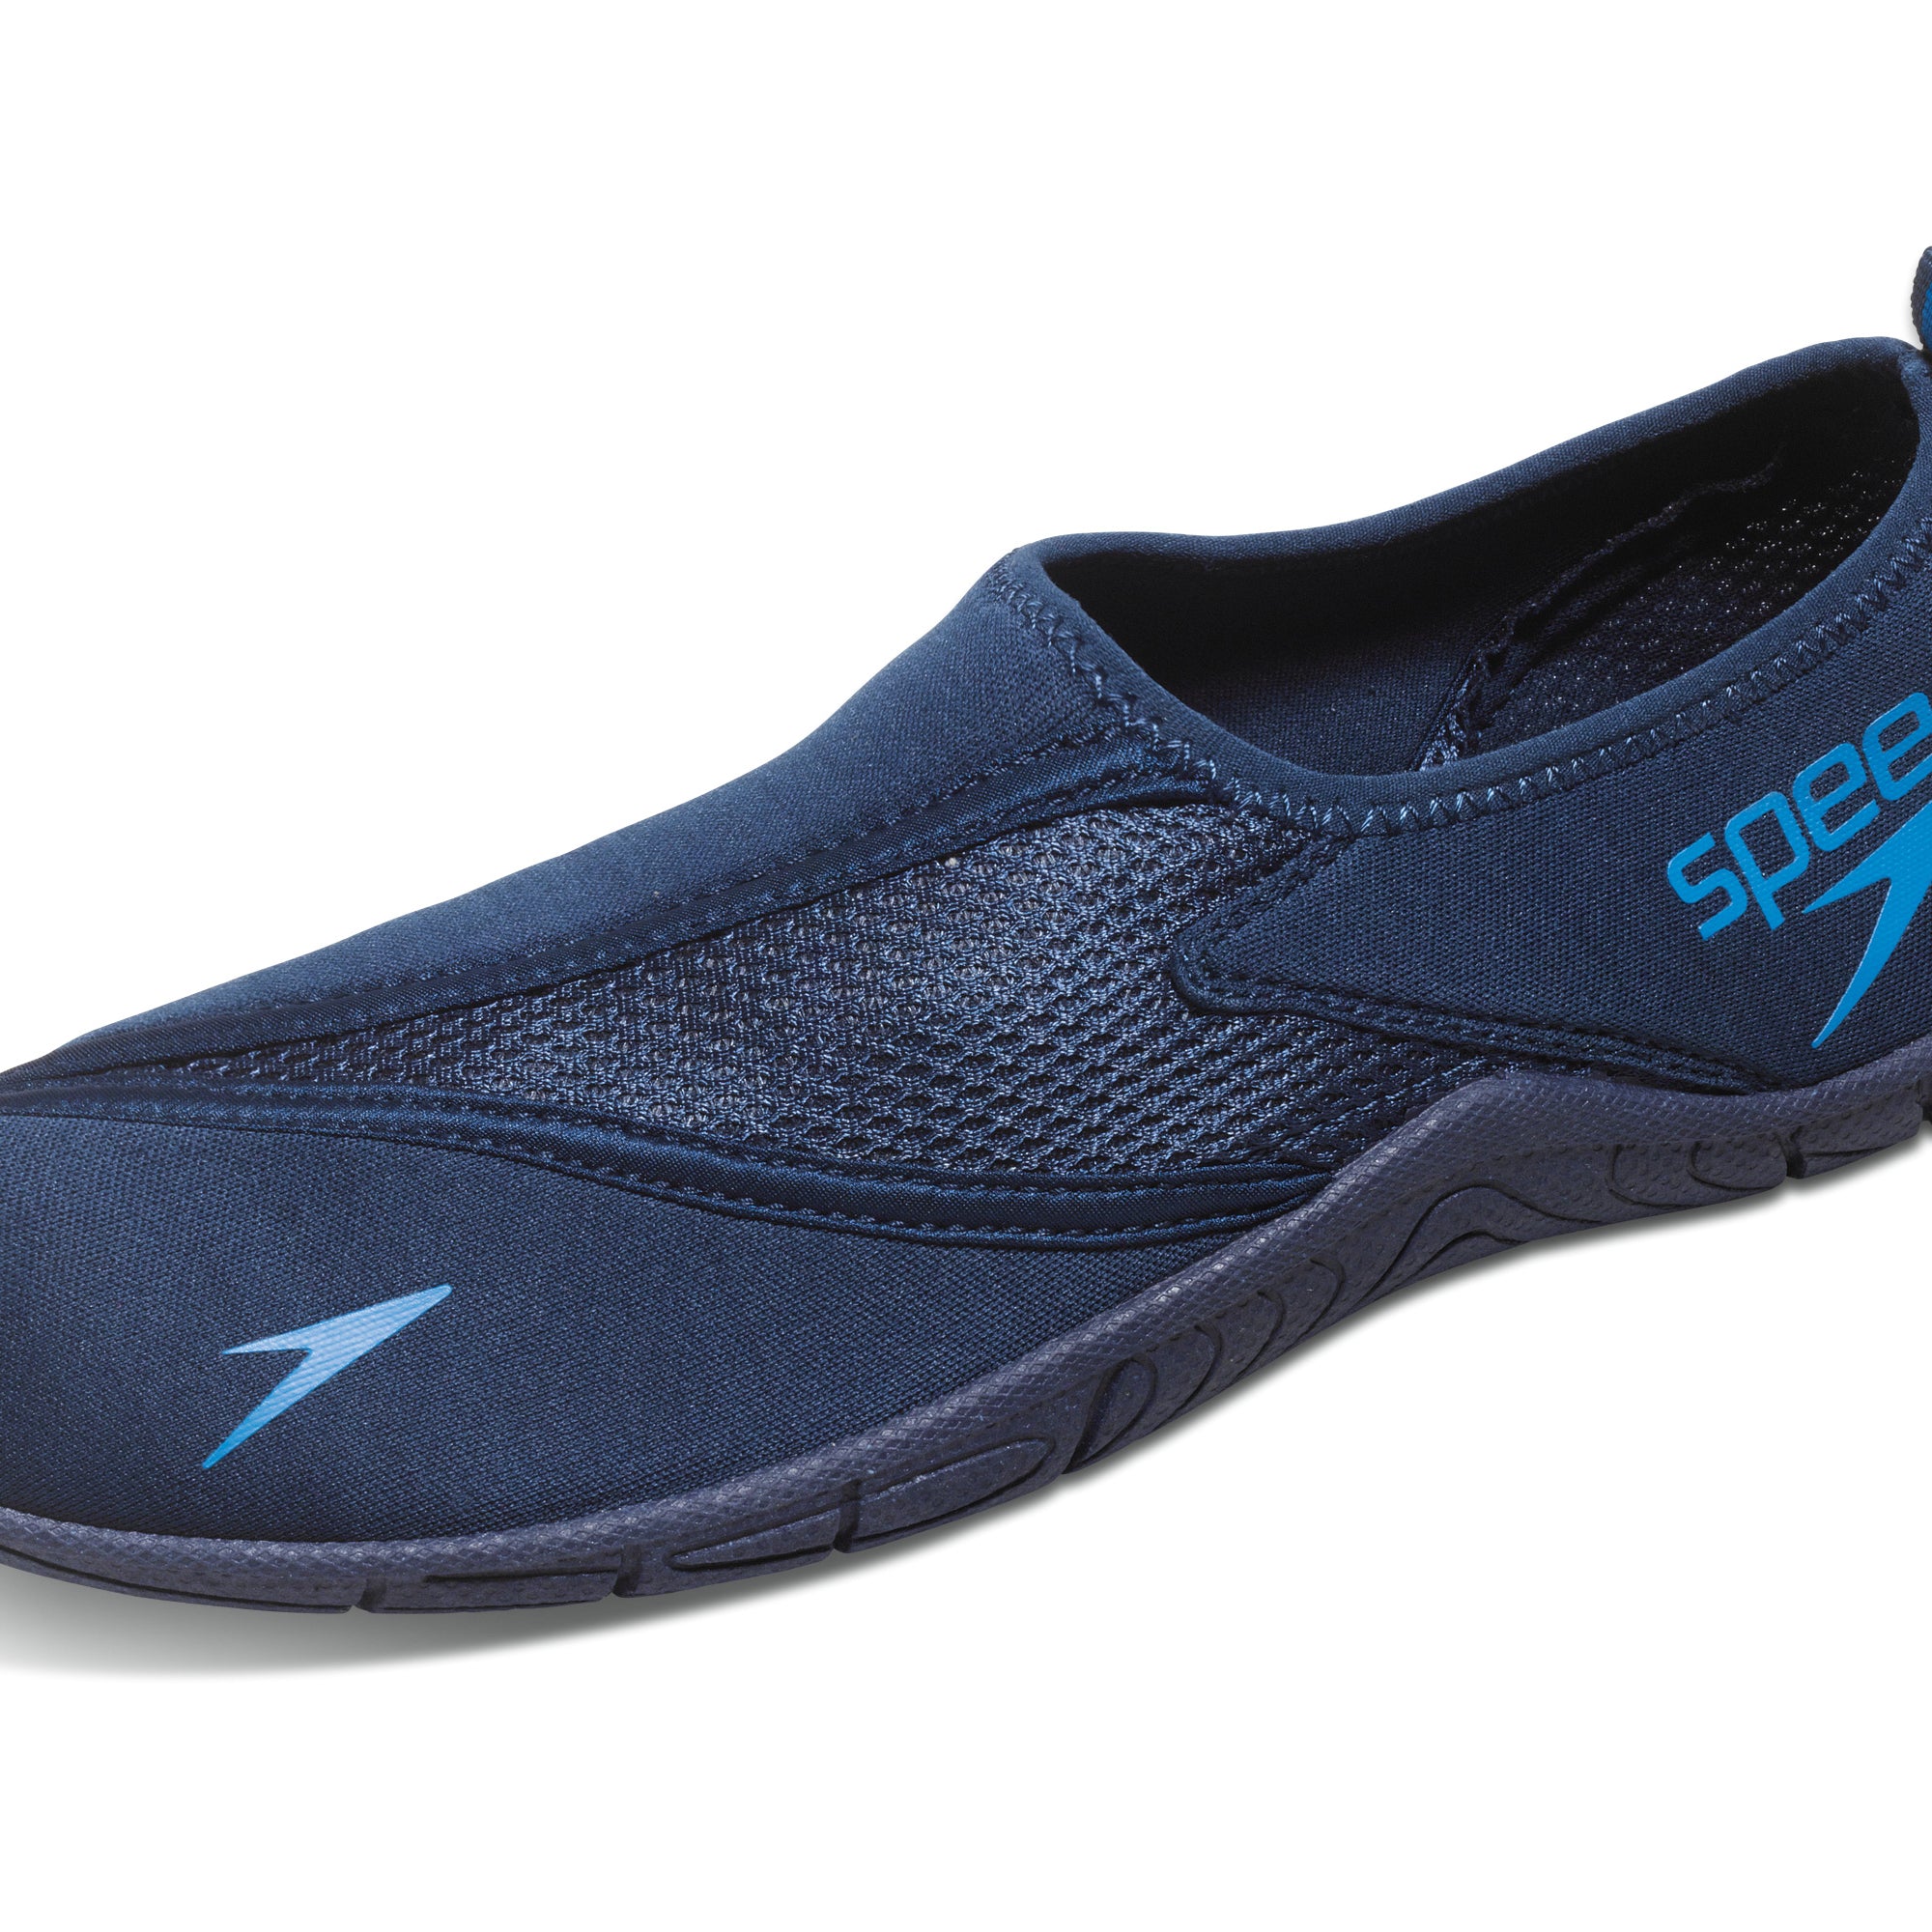 SPEEDO:MEN'S SURFWALKER PRO 3.0 - NAVY/BLUE